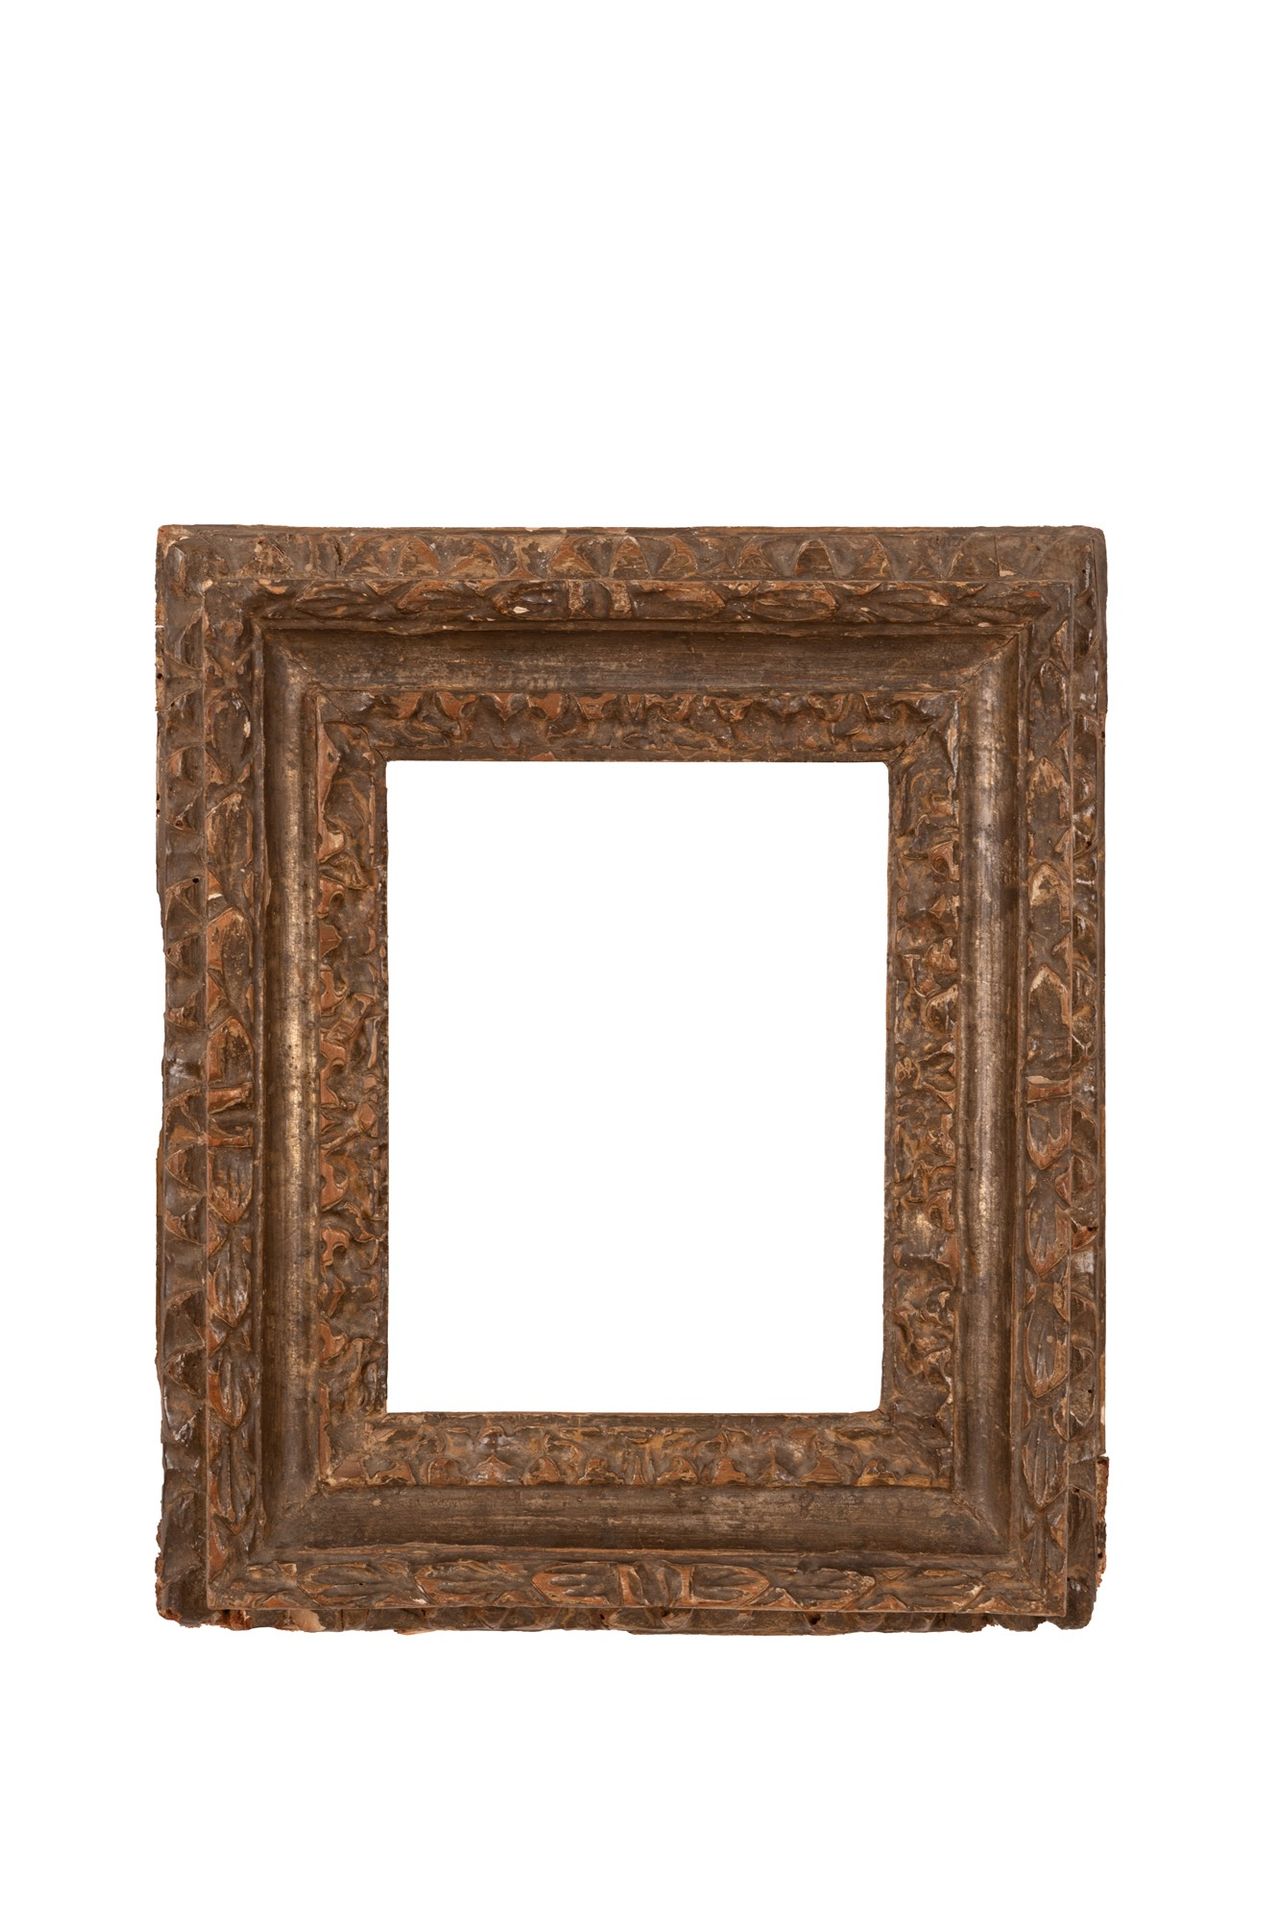 Cornice in legno XVII secolo 40x36 cm; luz interior 23x18 cm Siglo XVII2